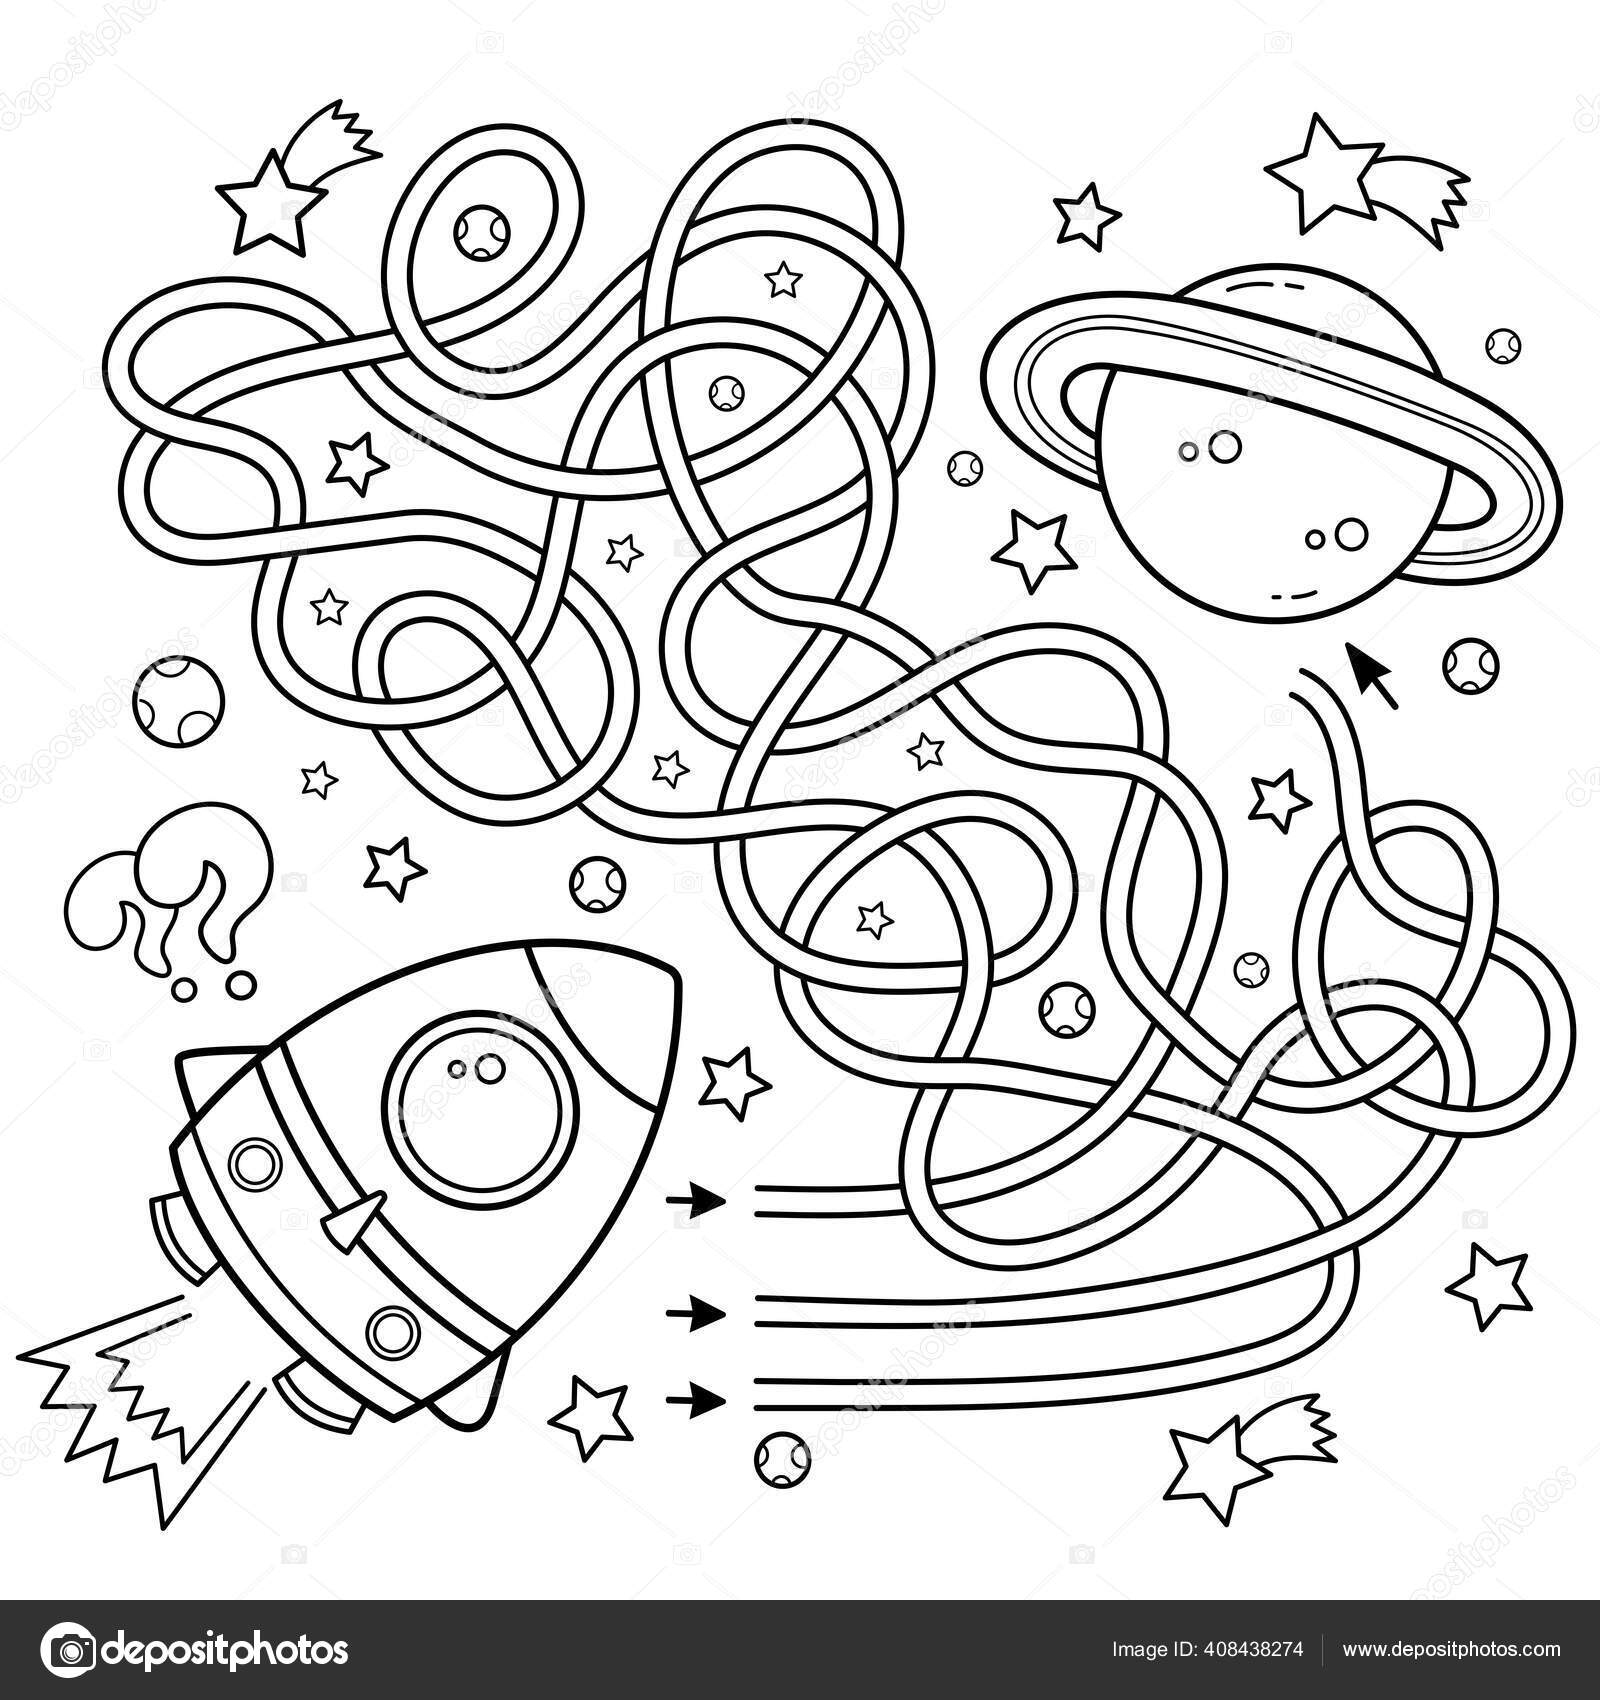 Labirinto Labirinto Jogo Para Crianças Pré Escolares Puzzle Estrada  Inclinada imagem vetorial de Oleon17© 355267070